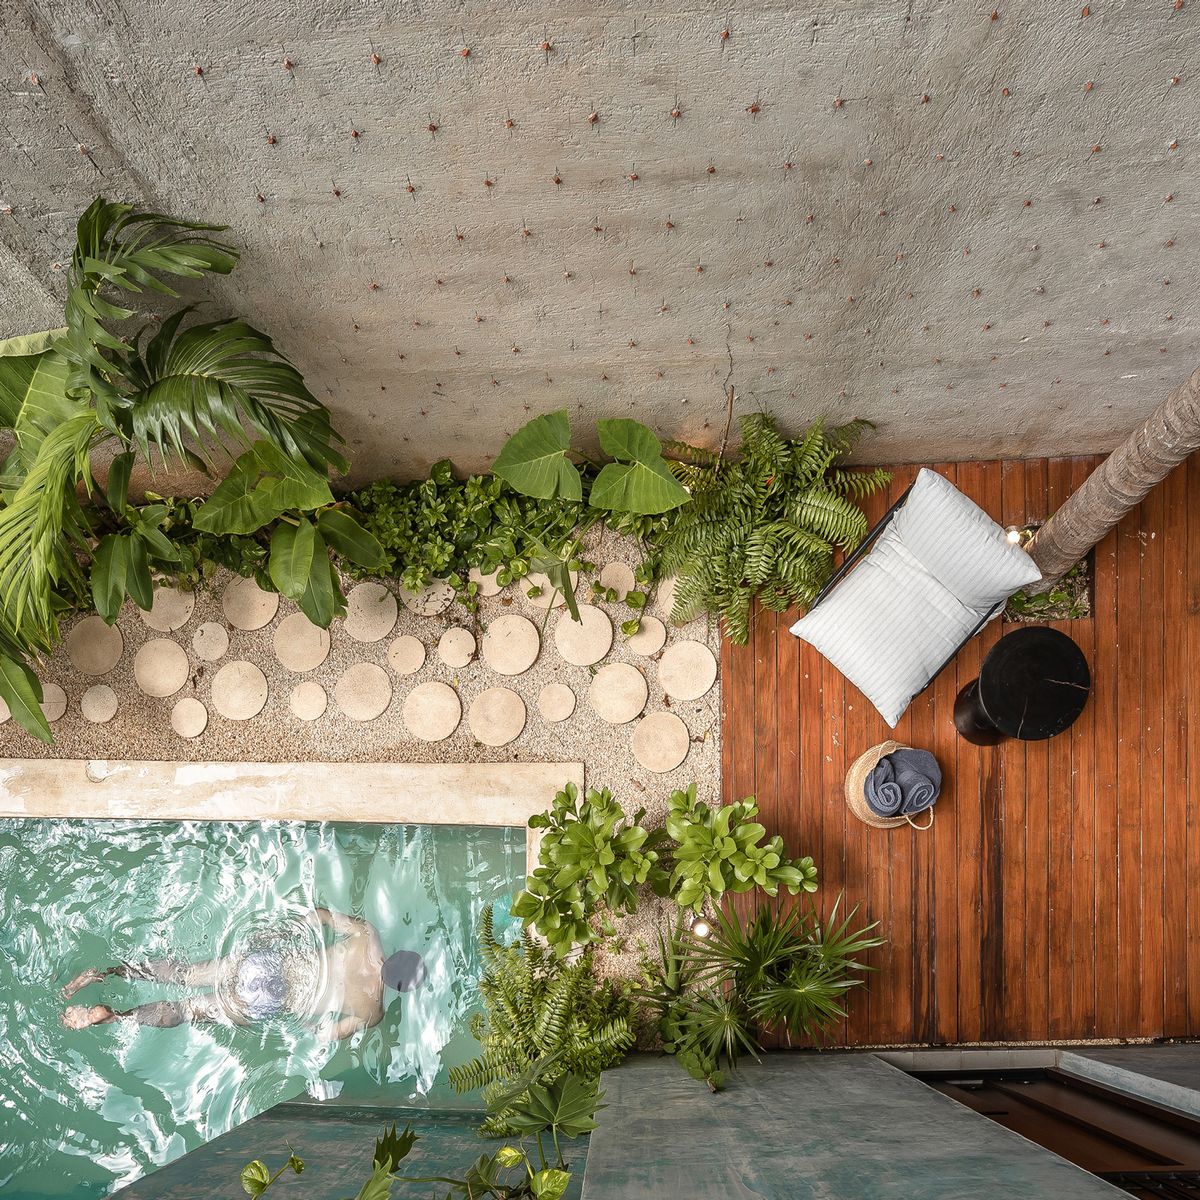 Jacuzzi exterior - cincuenta ideas espectaculares  Bañera de jardín,  Cubierta de bañera de hidromasaje, Decoración de unas